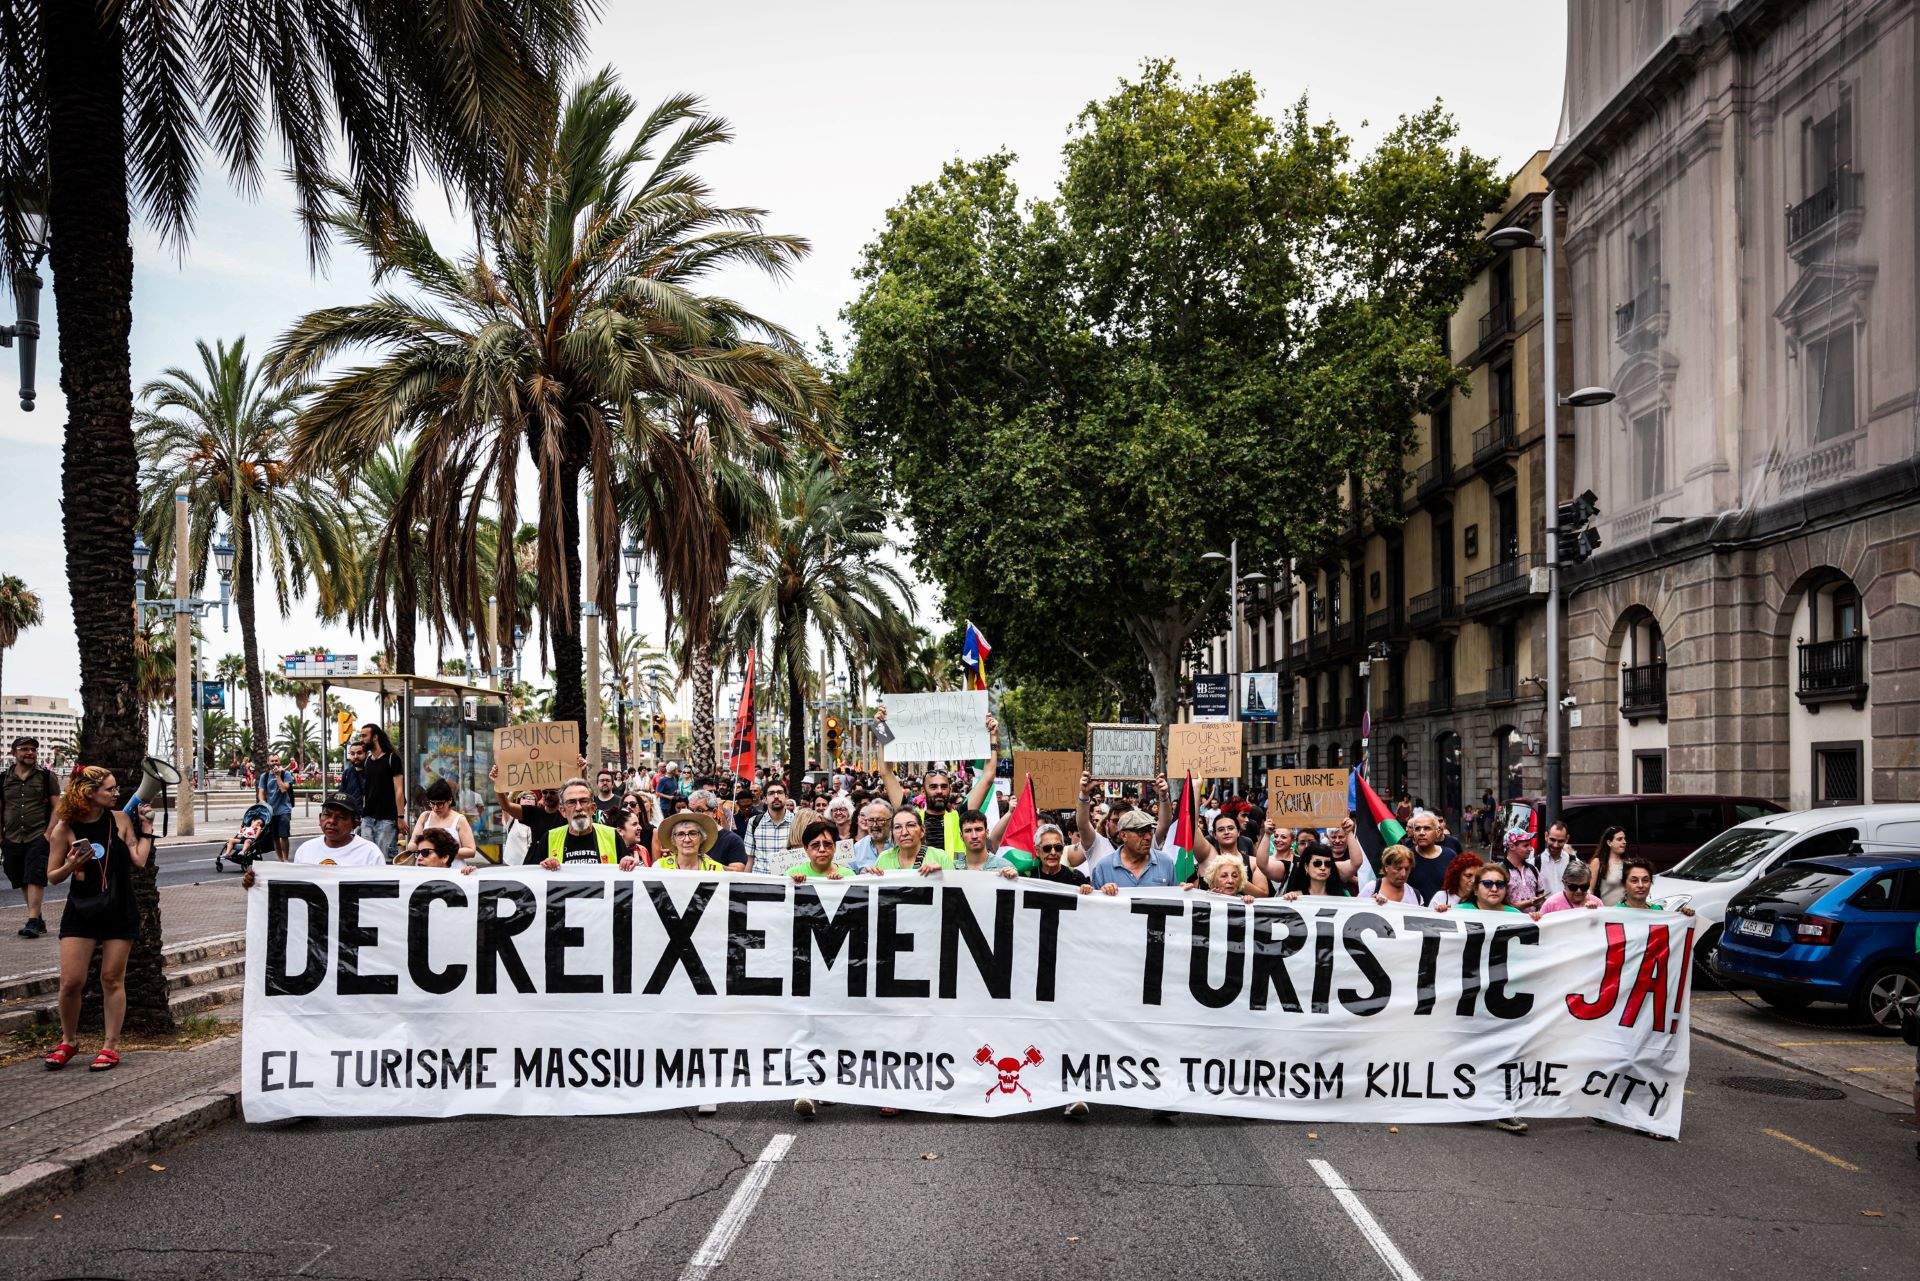 Barcelona se suma a la ola de protestas contra la masificación turística: "Decrecimiento ya"